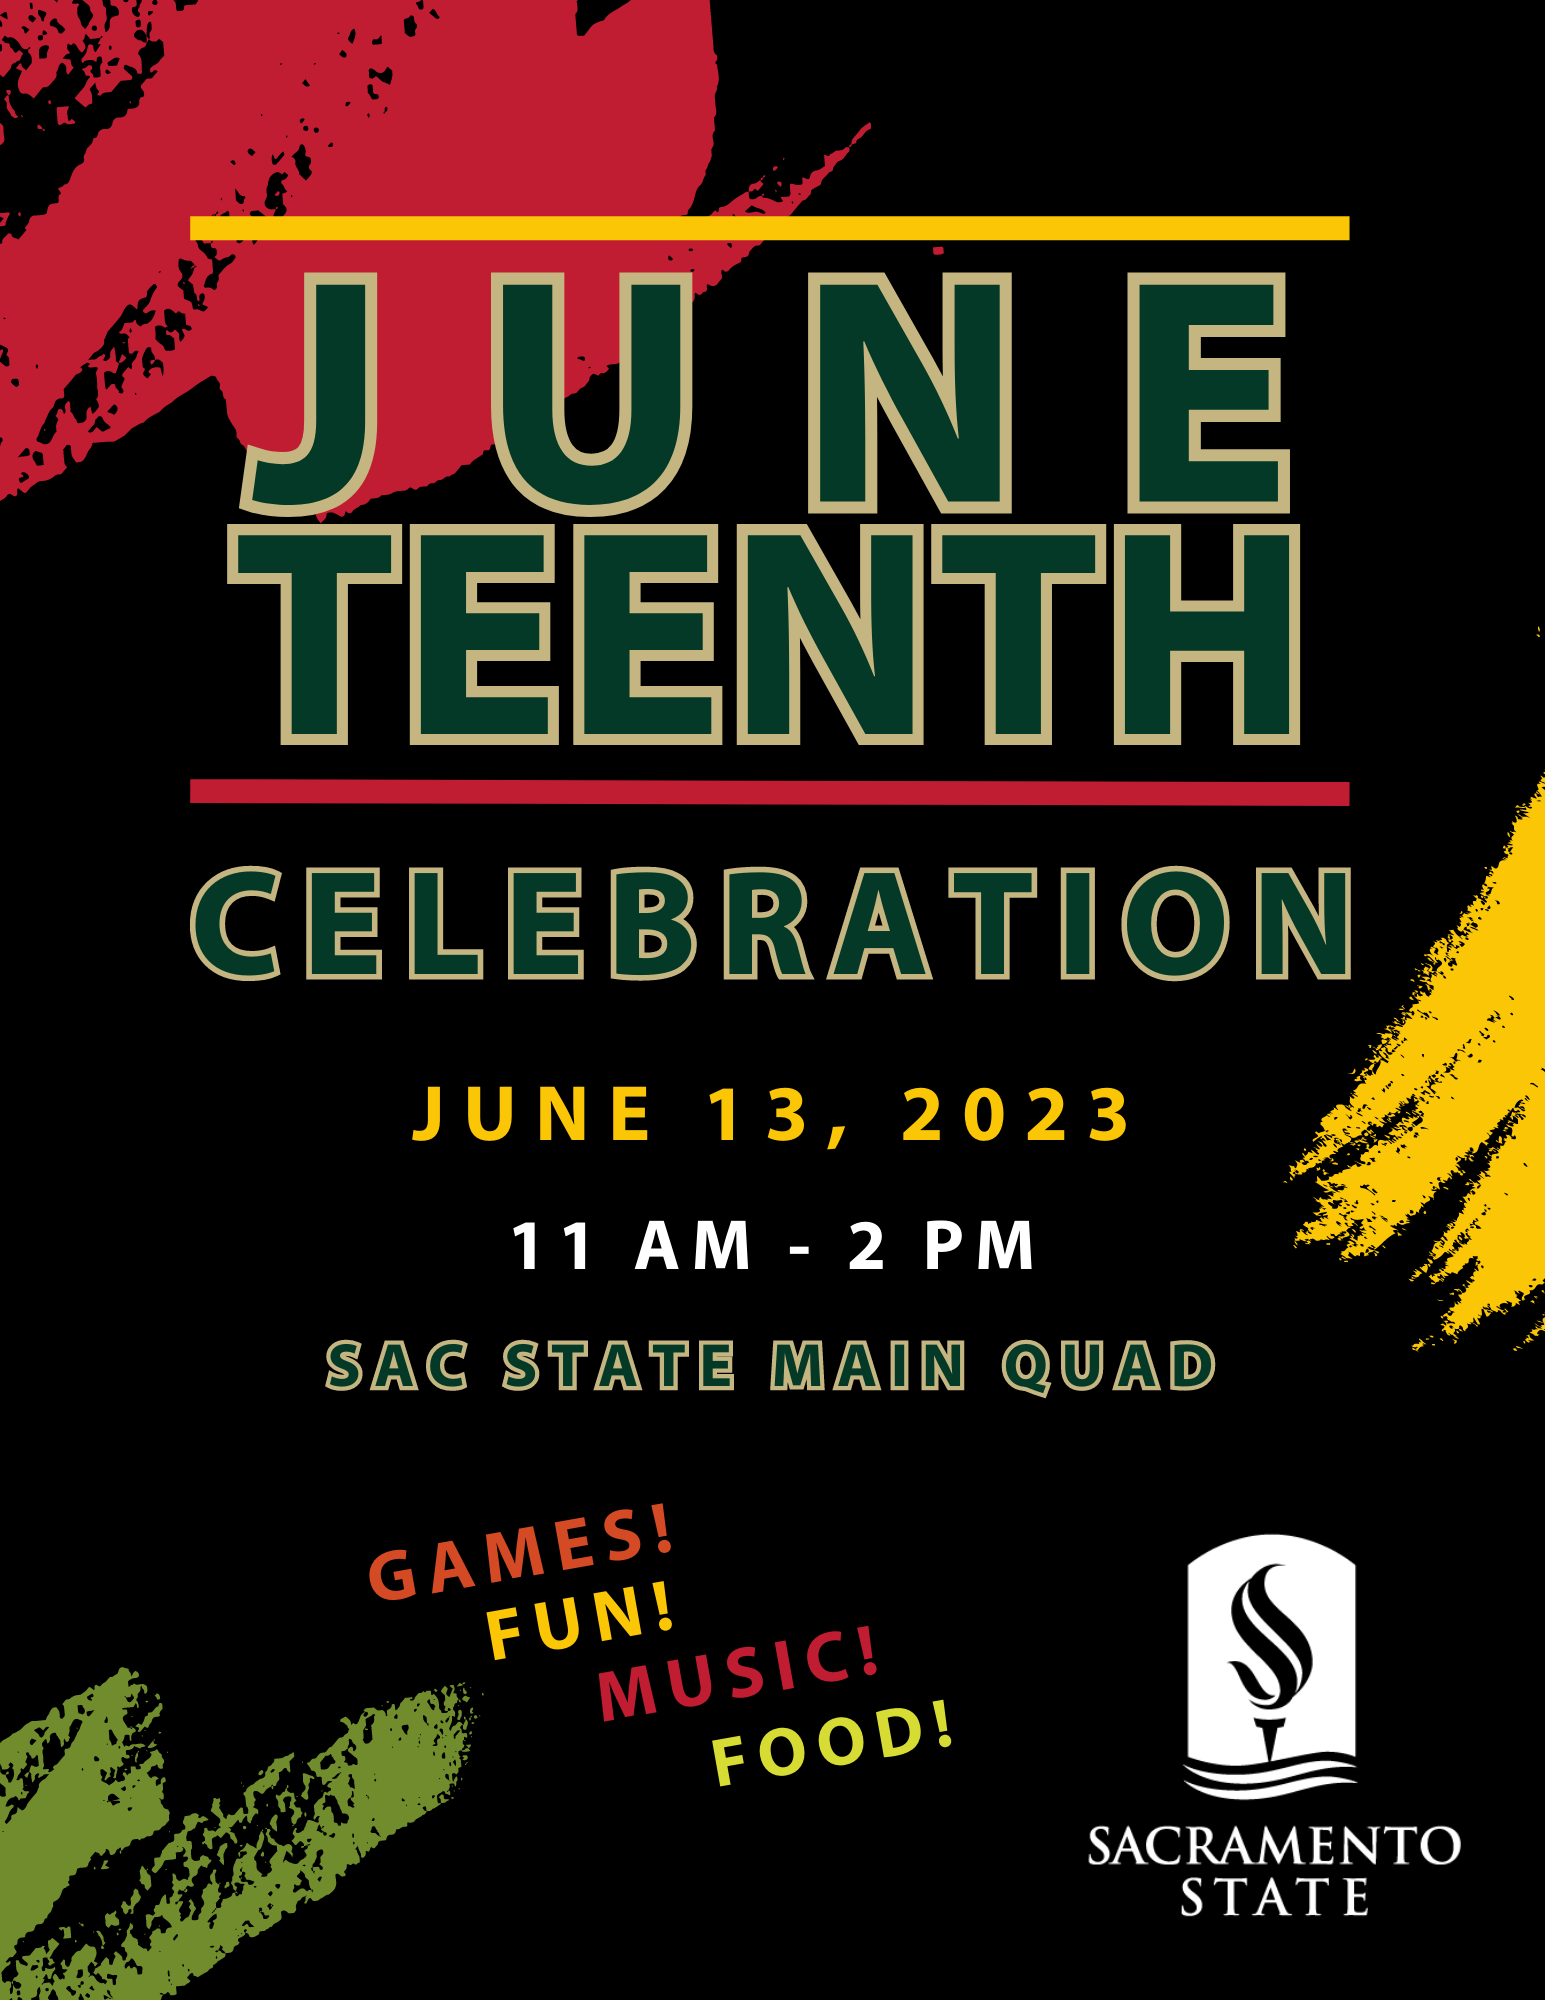 juneteenth-celebration-flyer.png